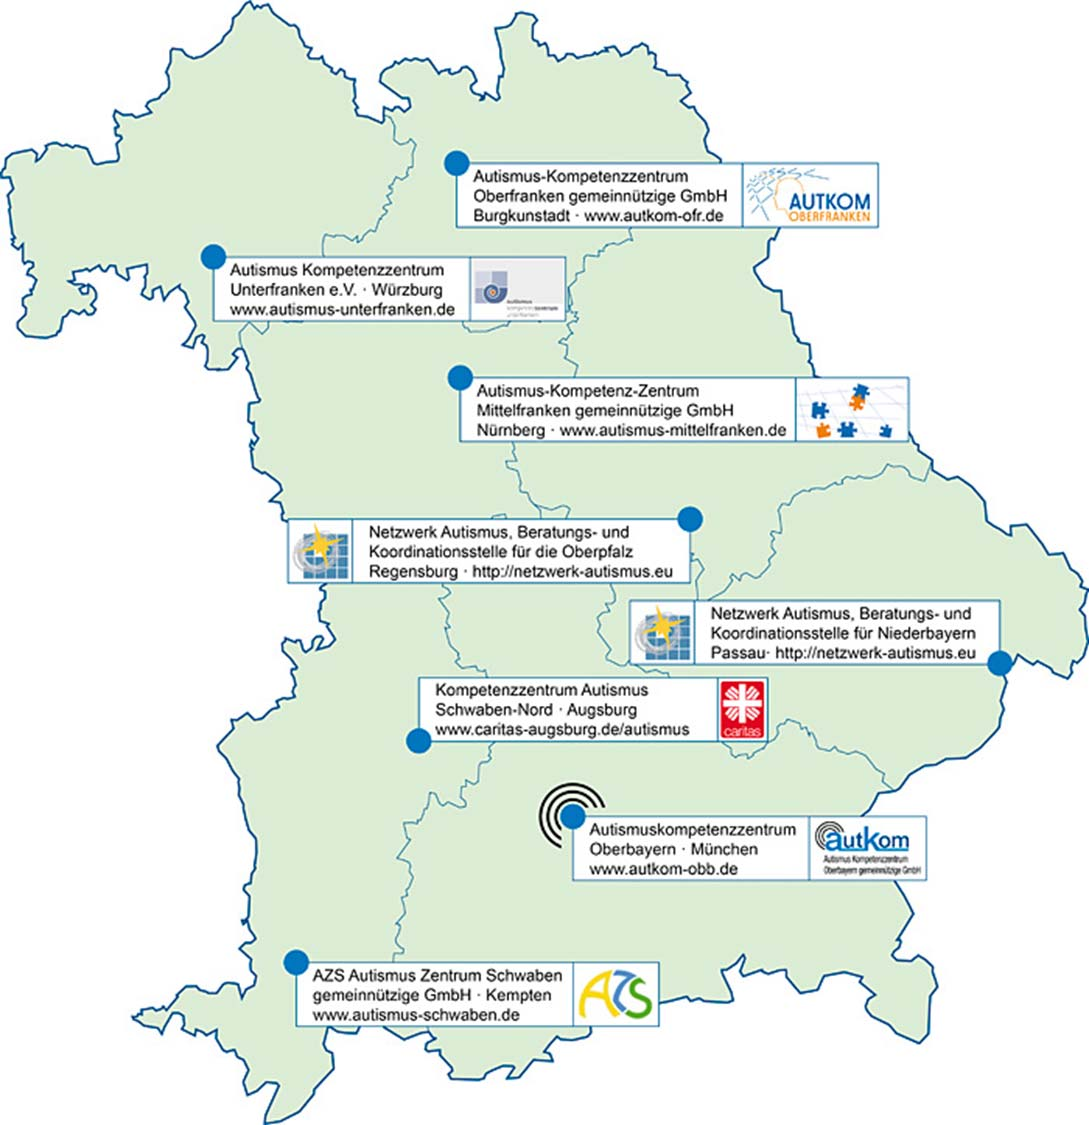 Autismuszentren in Bayern ab 2007 Etablierung von Autismuszentren in